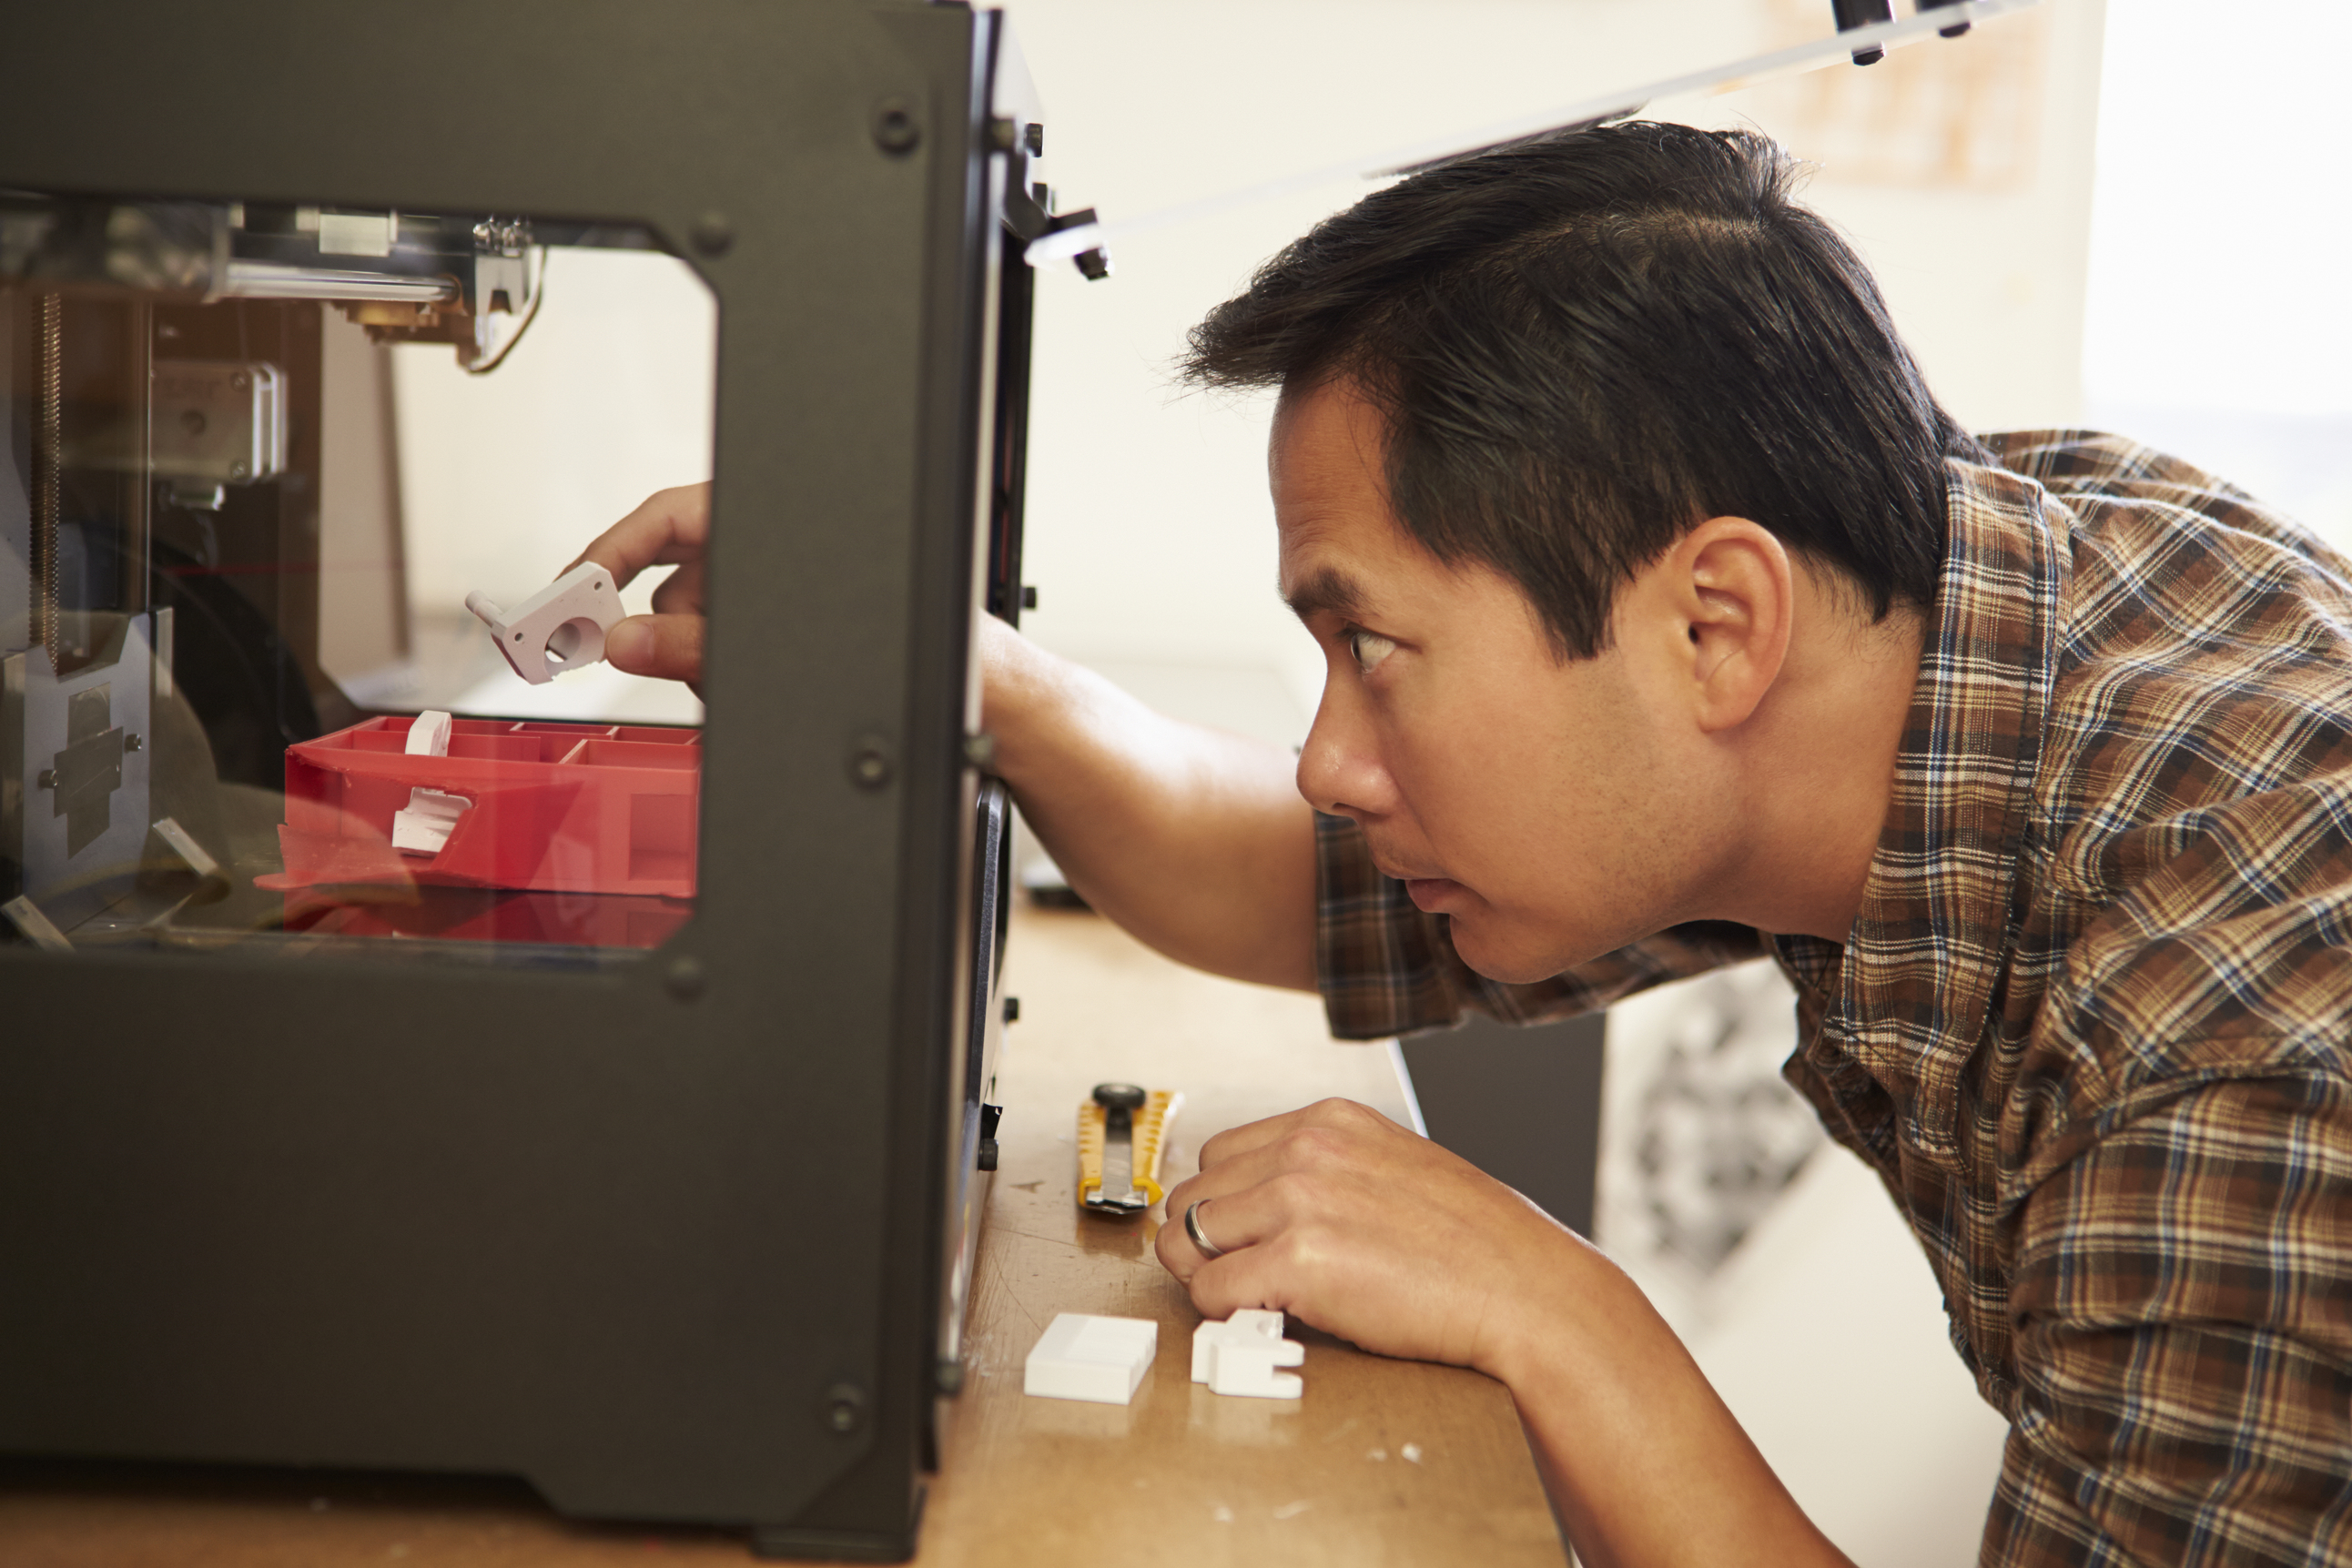 Para sirve una impresora 3D mi negocio?